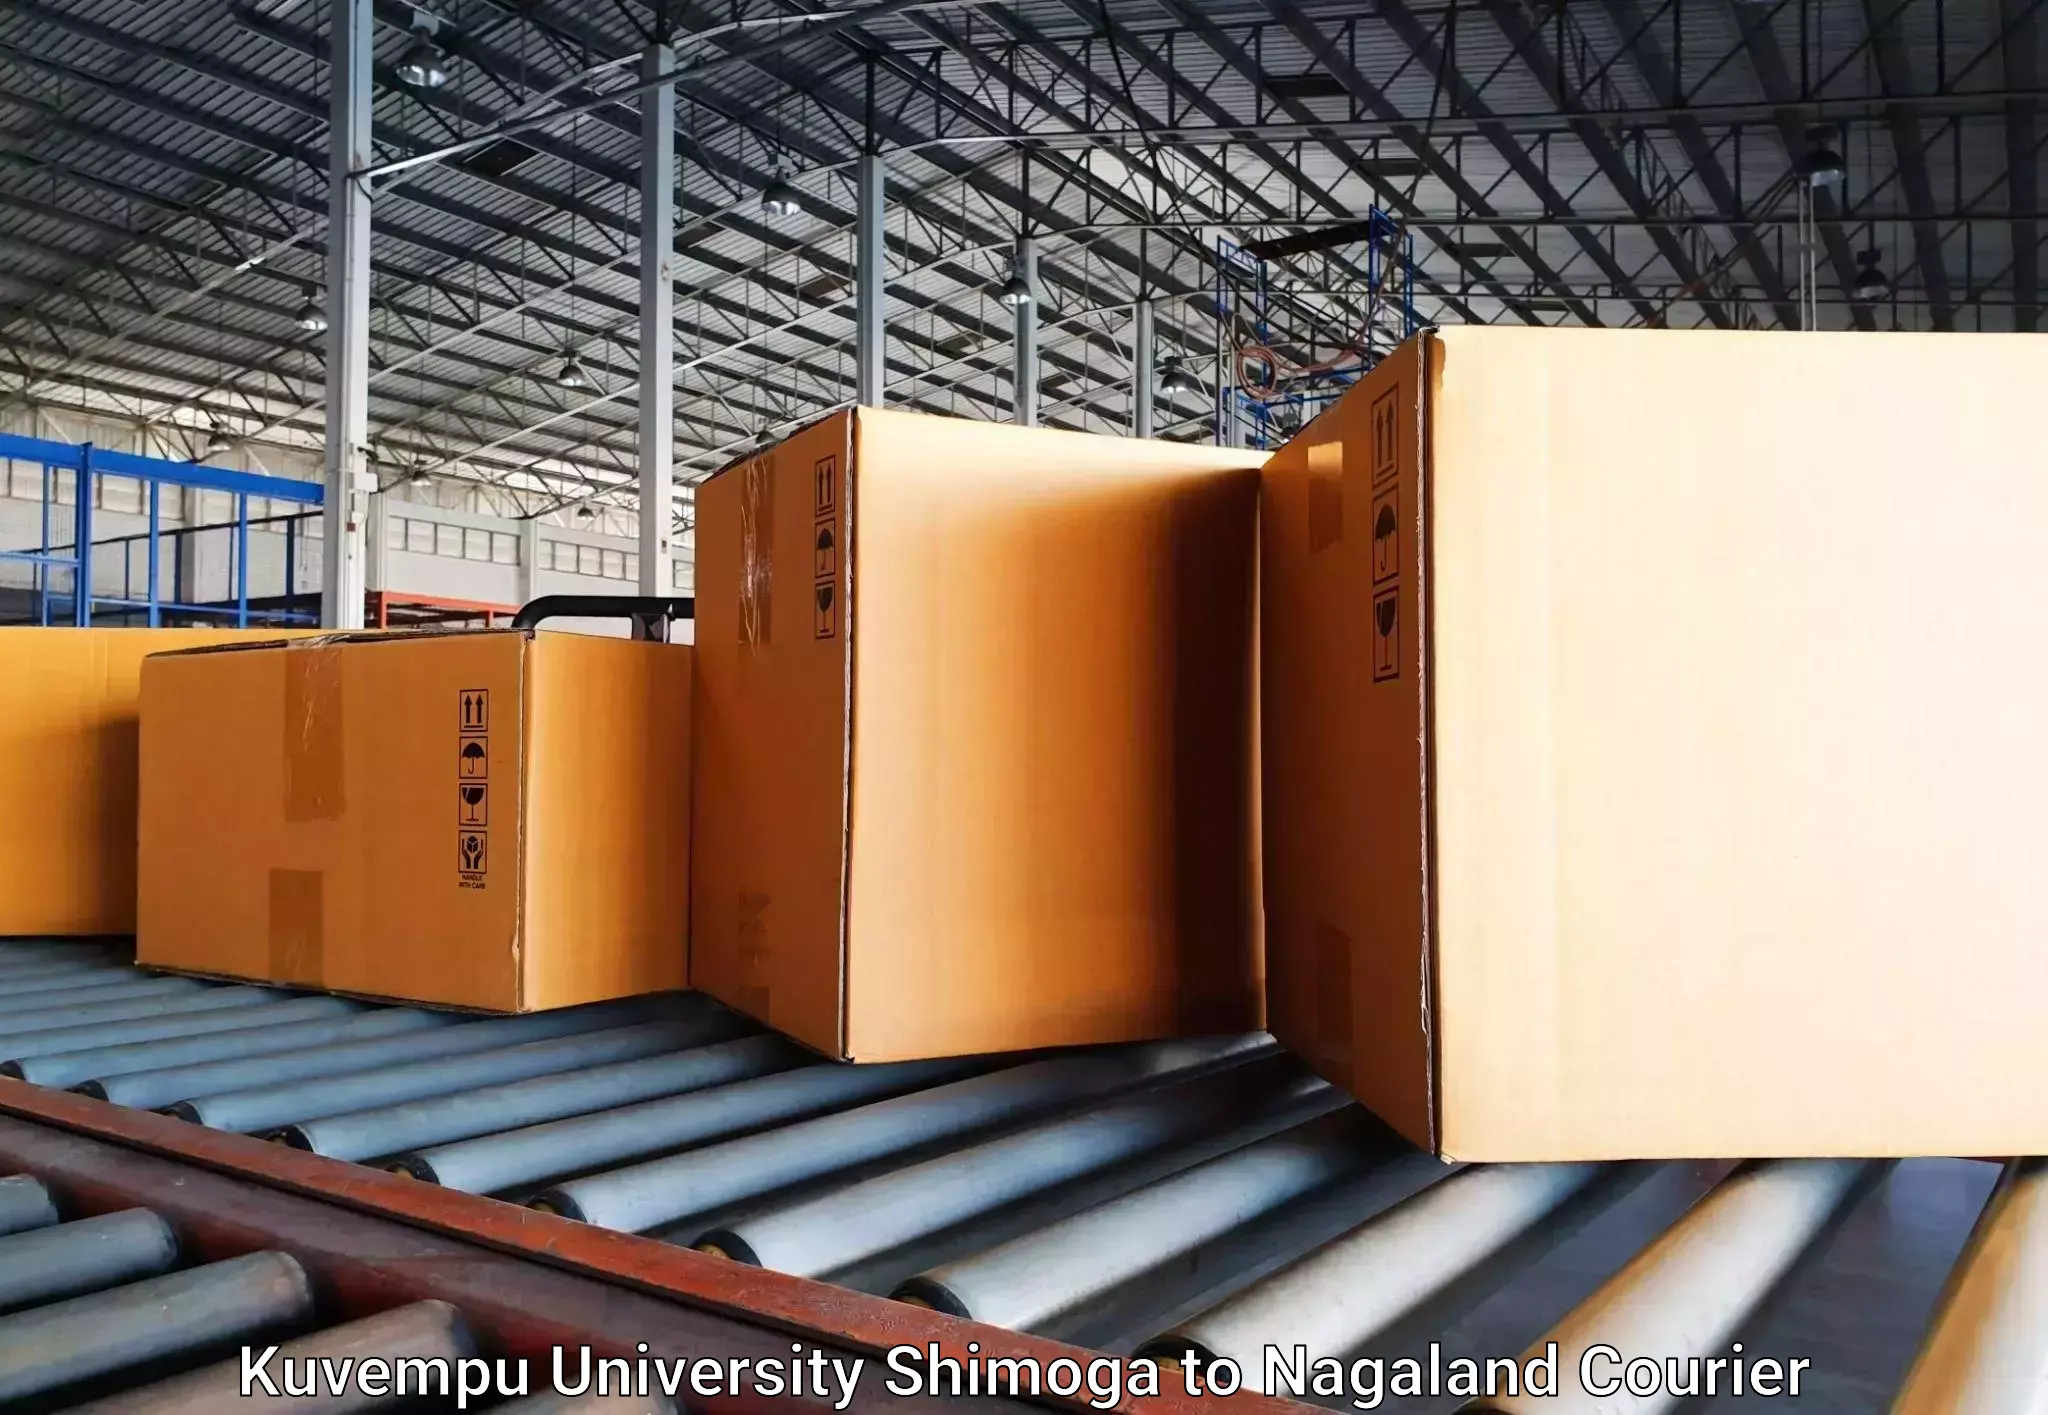 Luggage shipment specialists Kuvempu University Shimoga to Kohima